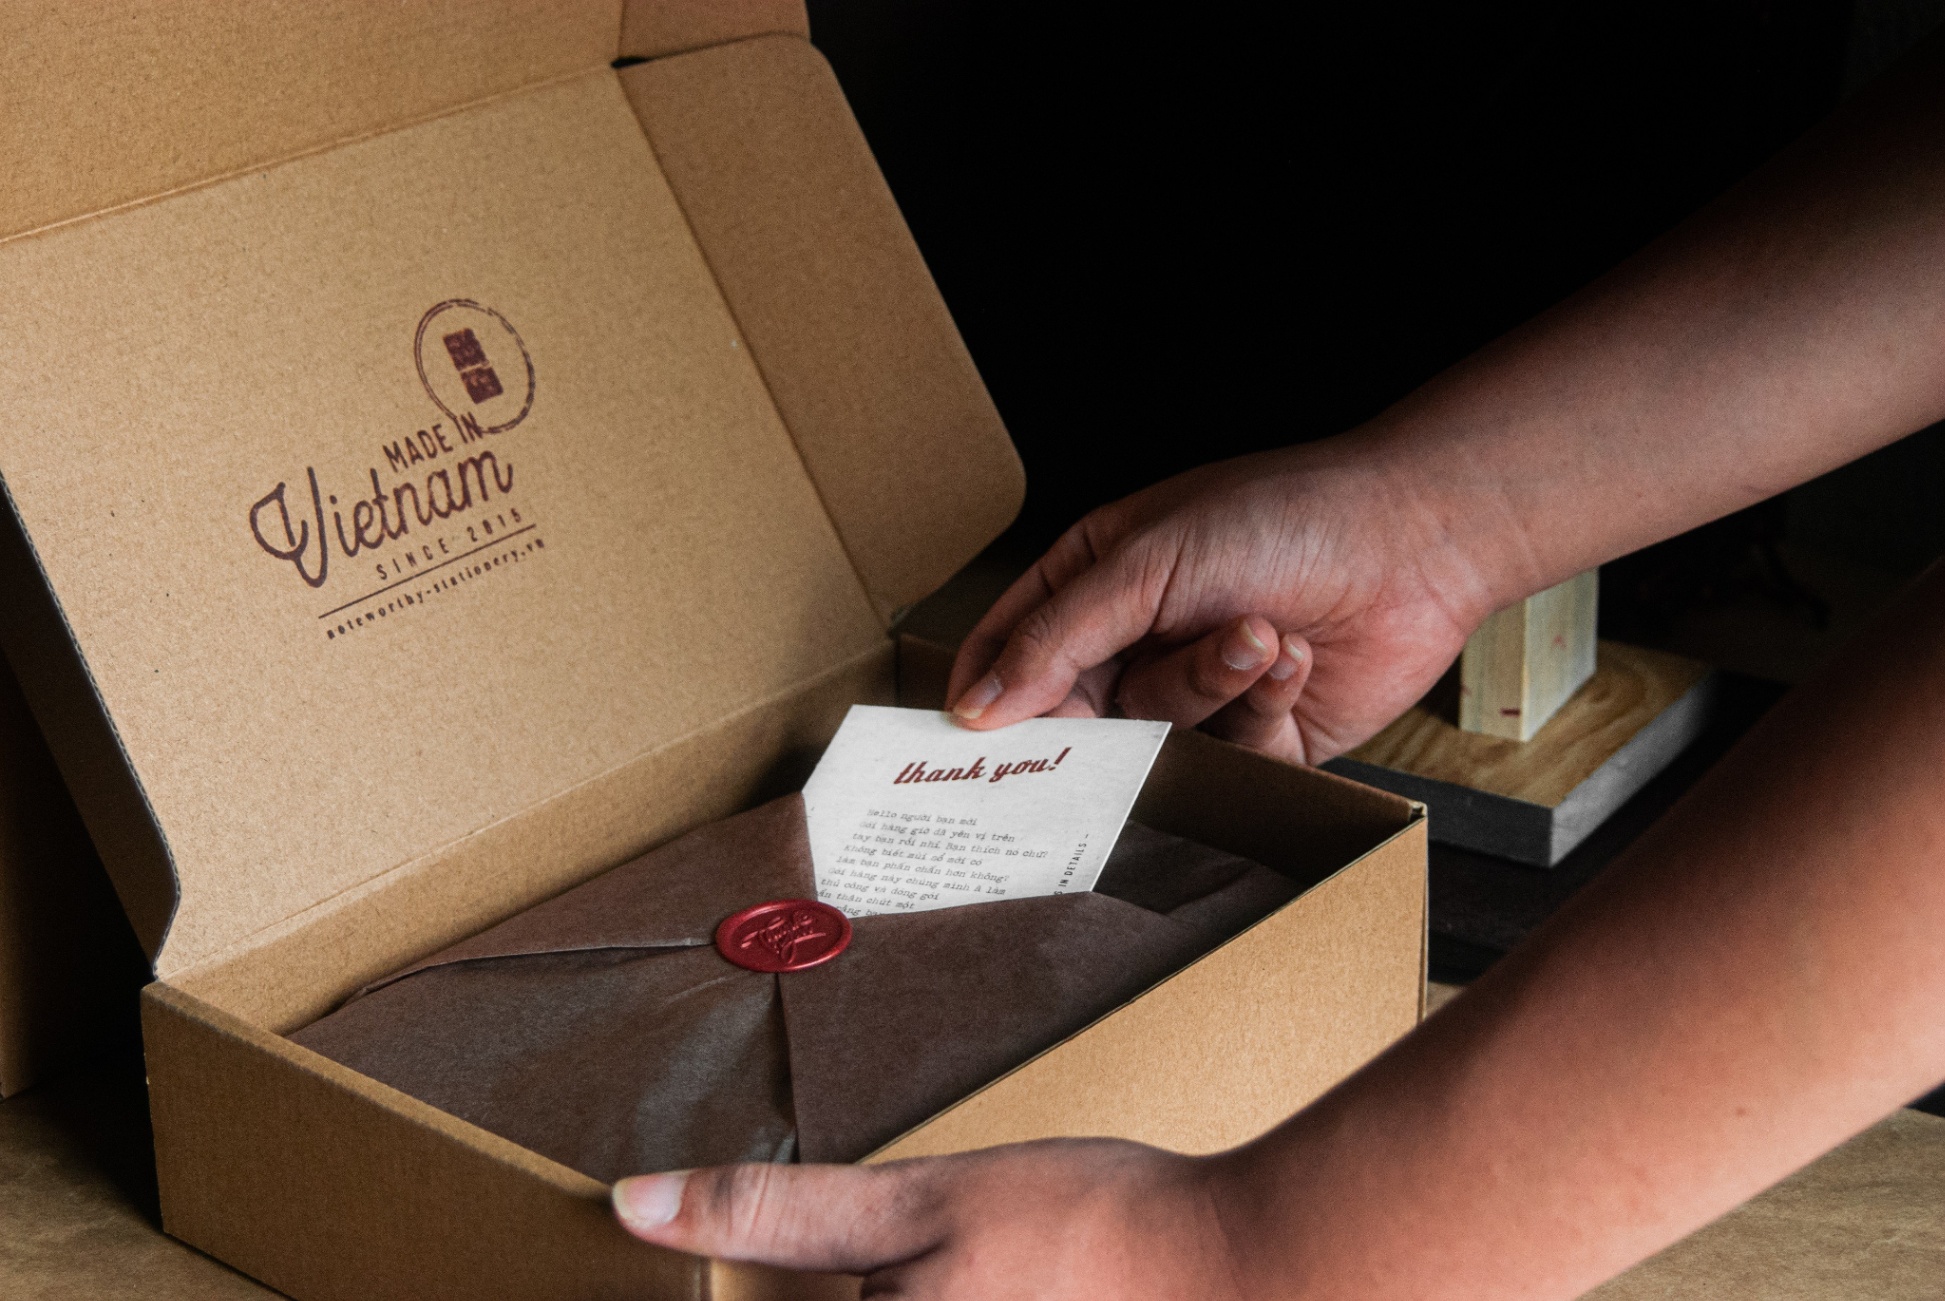 Packaging Noteworthy - Phát triển để tạo ra những trải nghiệm “unboxing” đáng nhớ cho khách hàng